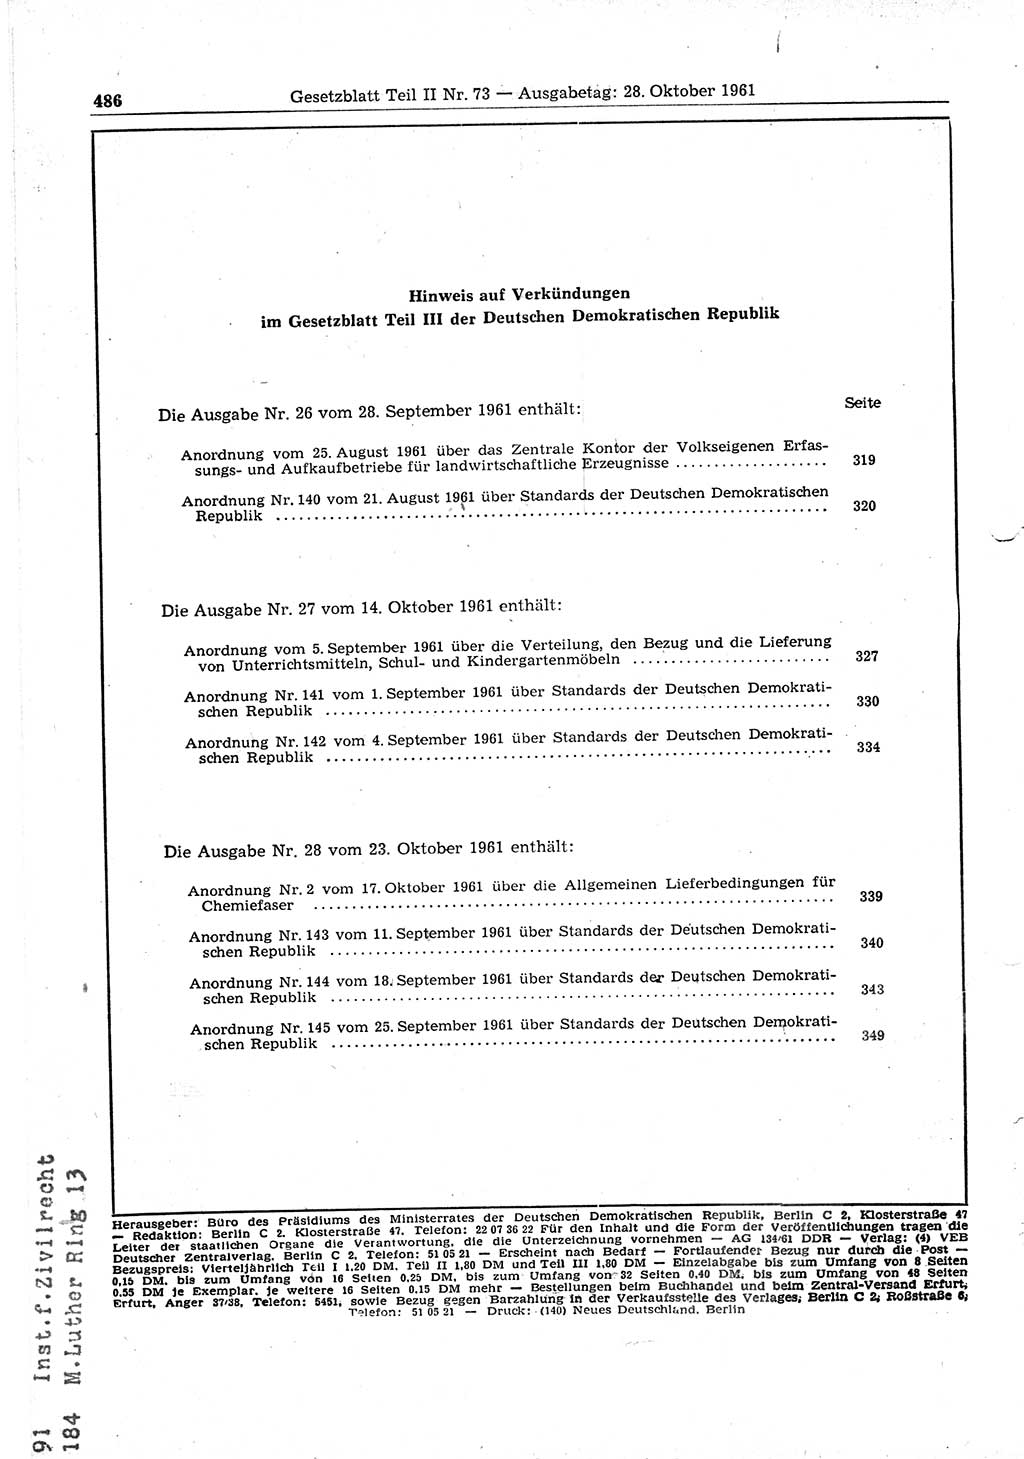 Gesetzblatt (GBl.) der Deutschen Demokratischen Republik (DDR) Teil ⅠⅠ 1961, Seite 486 (GBl. DDR ⅠⅠ 1961, S. 486)